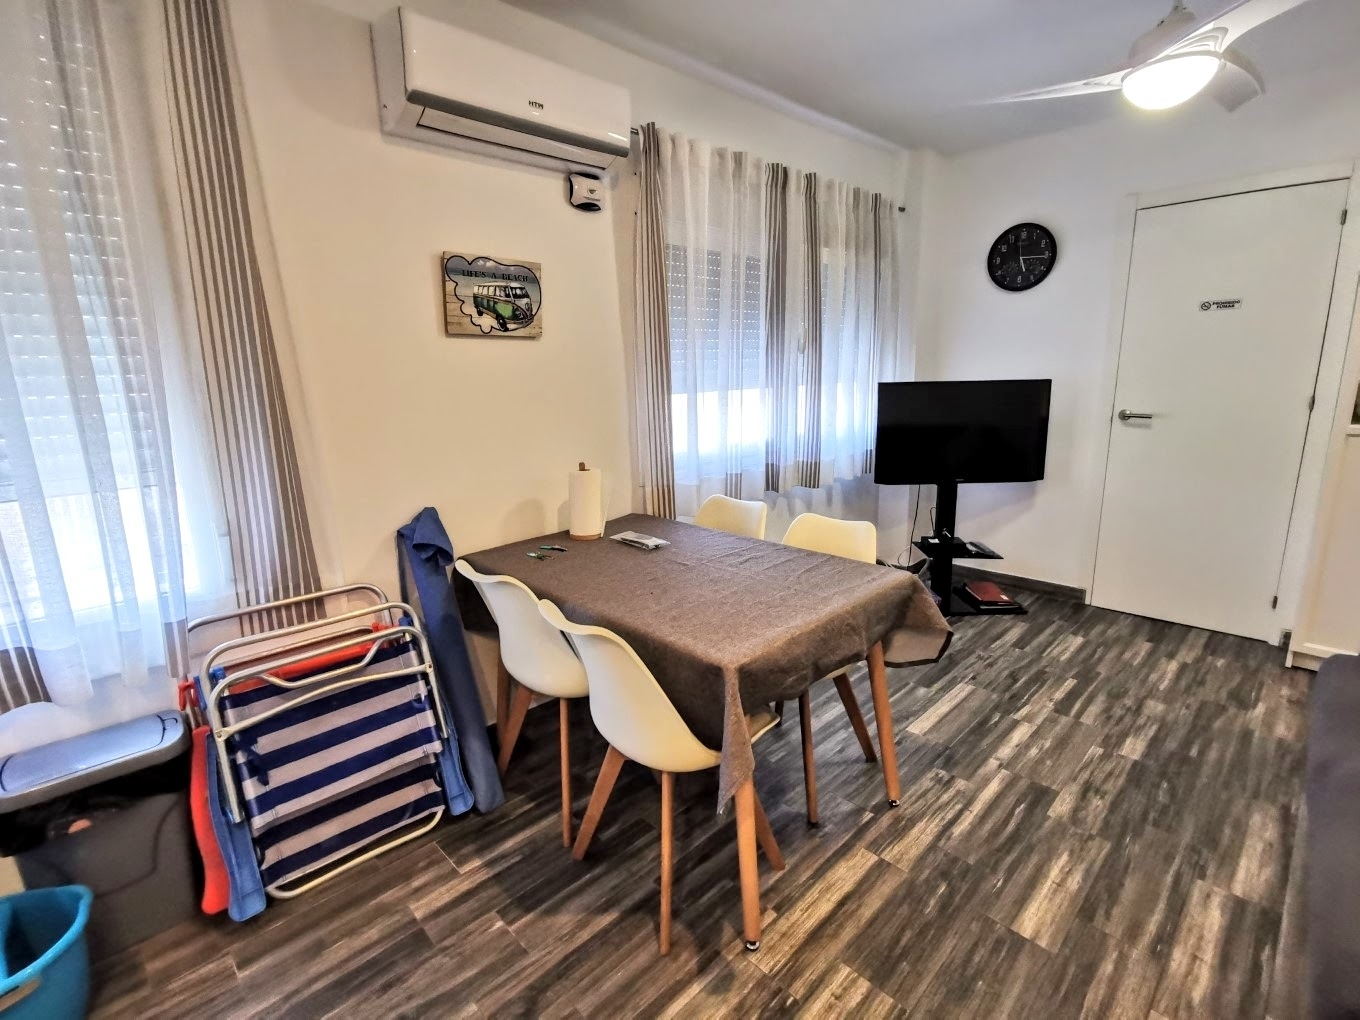 Casa adosada de cinco dormitorios separada en 3 apartamentos en venta en la playa del Arenal de Jávea